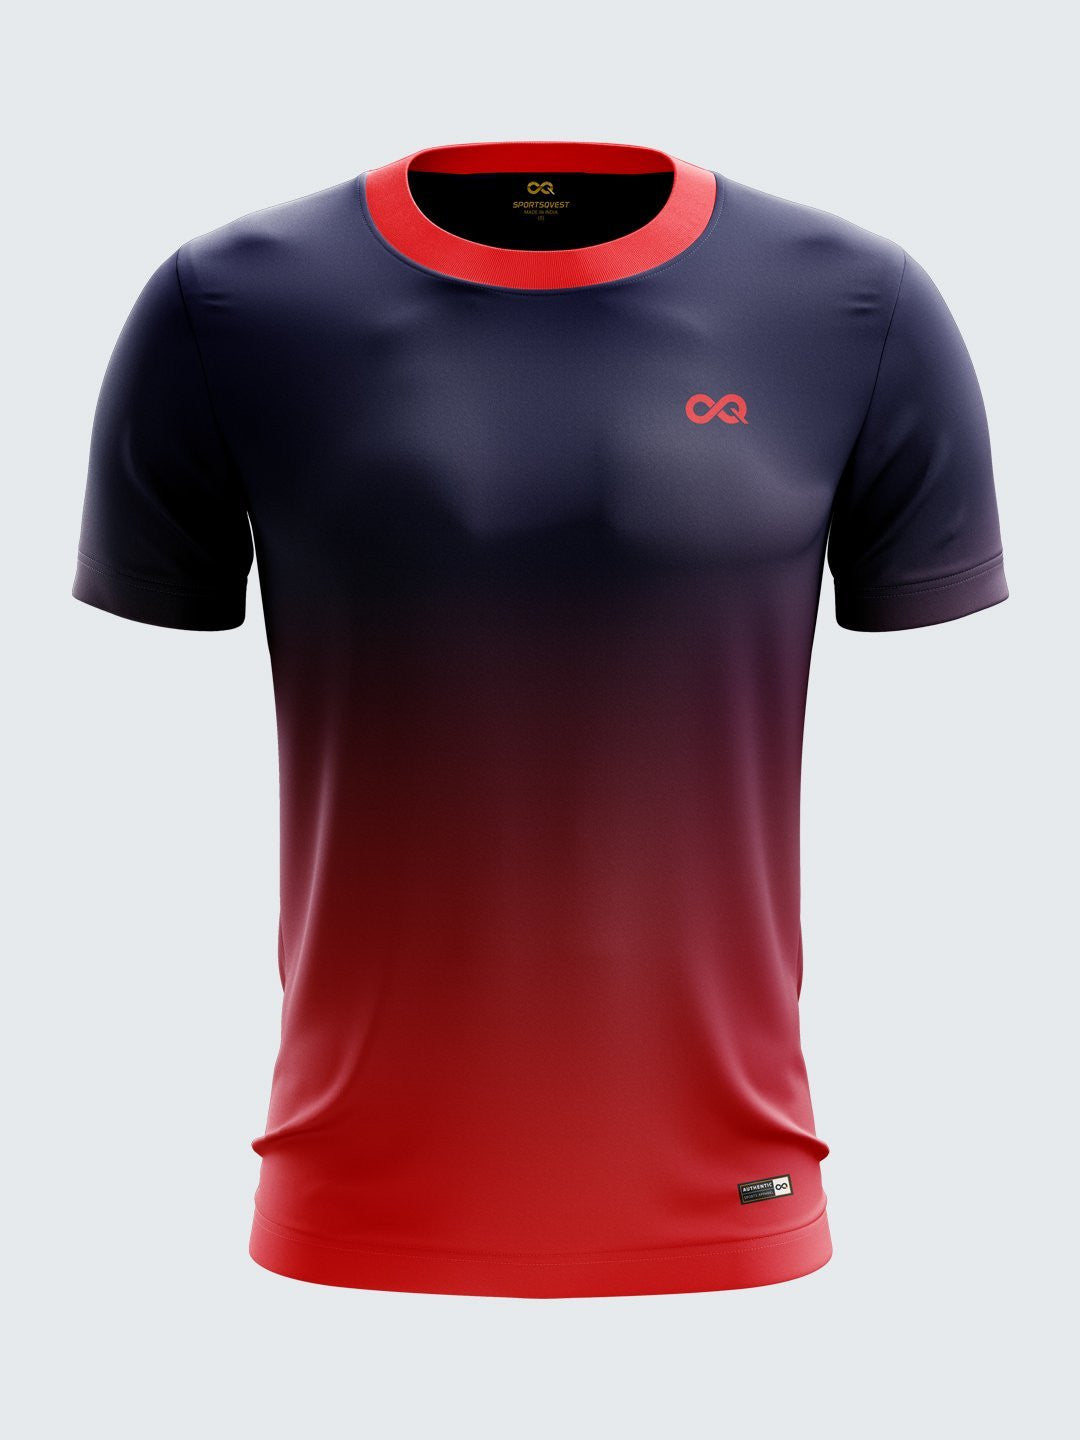 Luftfart Udelade lodret Men Red & Dark Blue Printed Round Neck Sports T-shirt- 1158RD|Sportsqvest